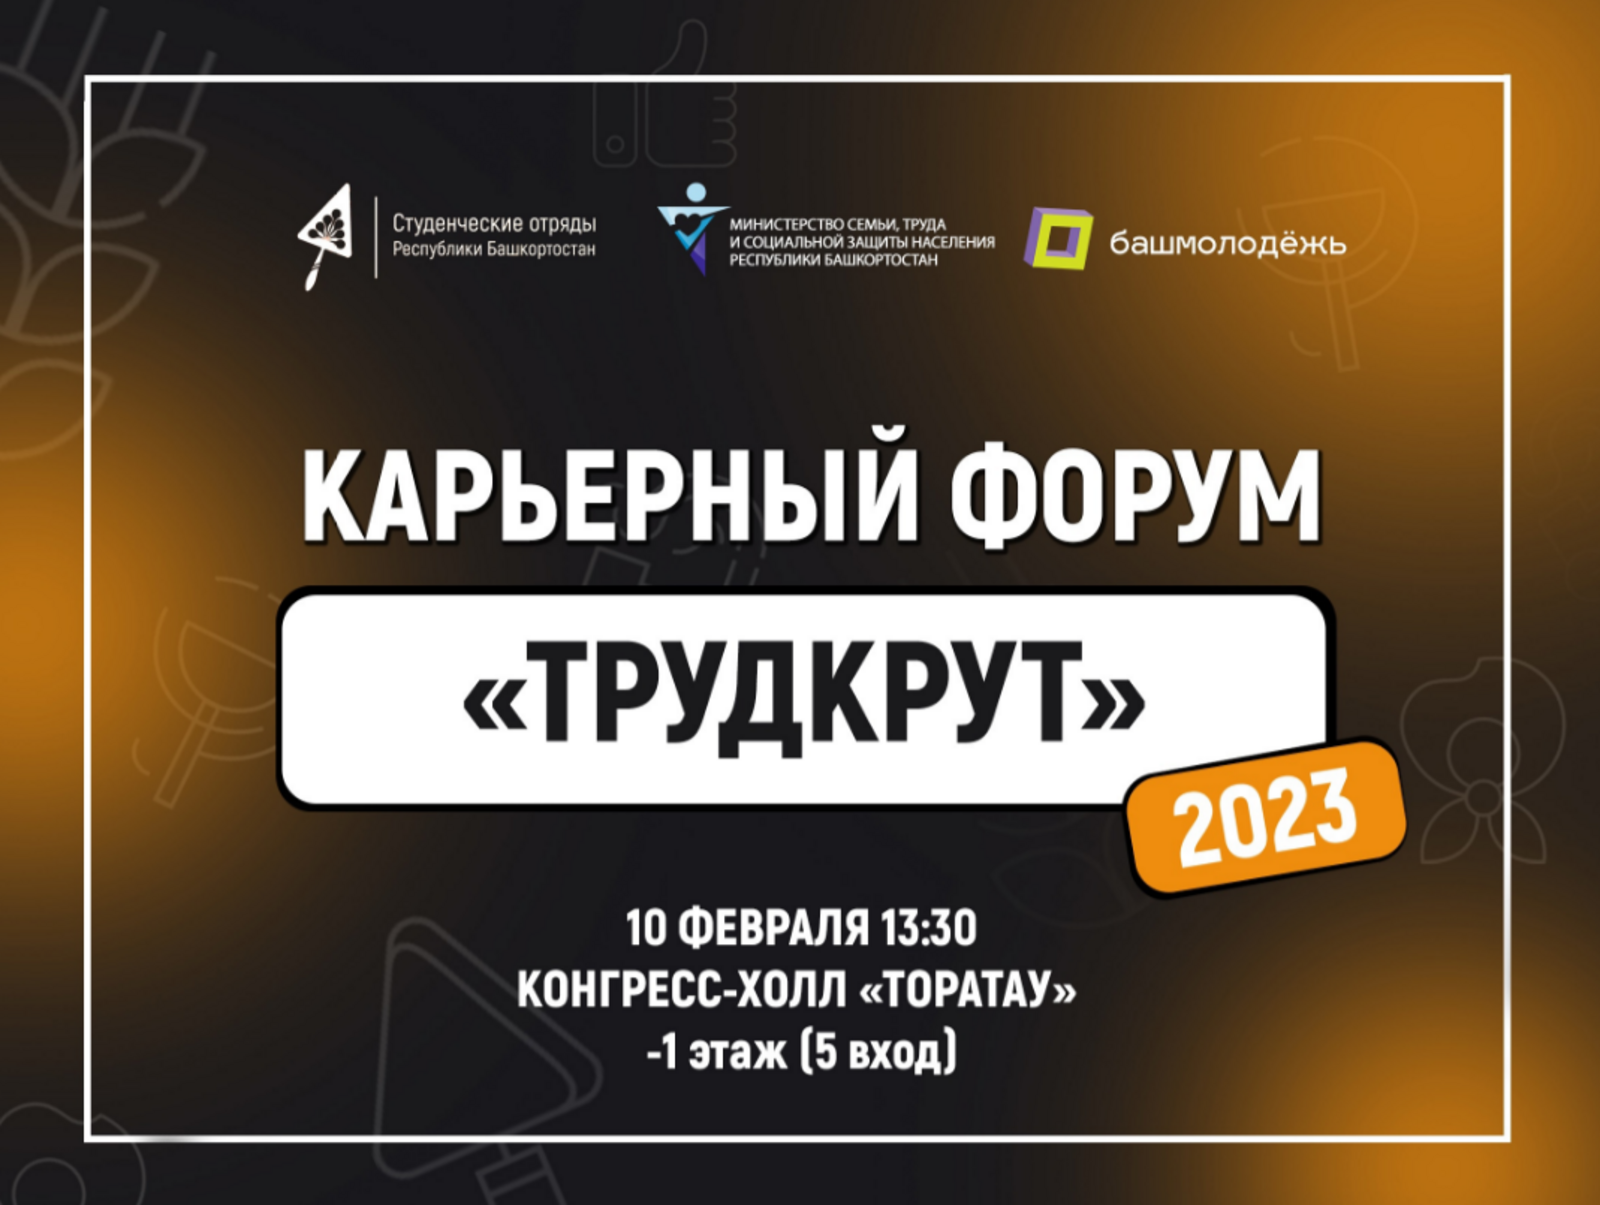 Молодежь Башкортостана сможет найти работу на Карьерном форуме #ТРУДКРУТ 2023